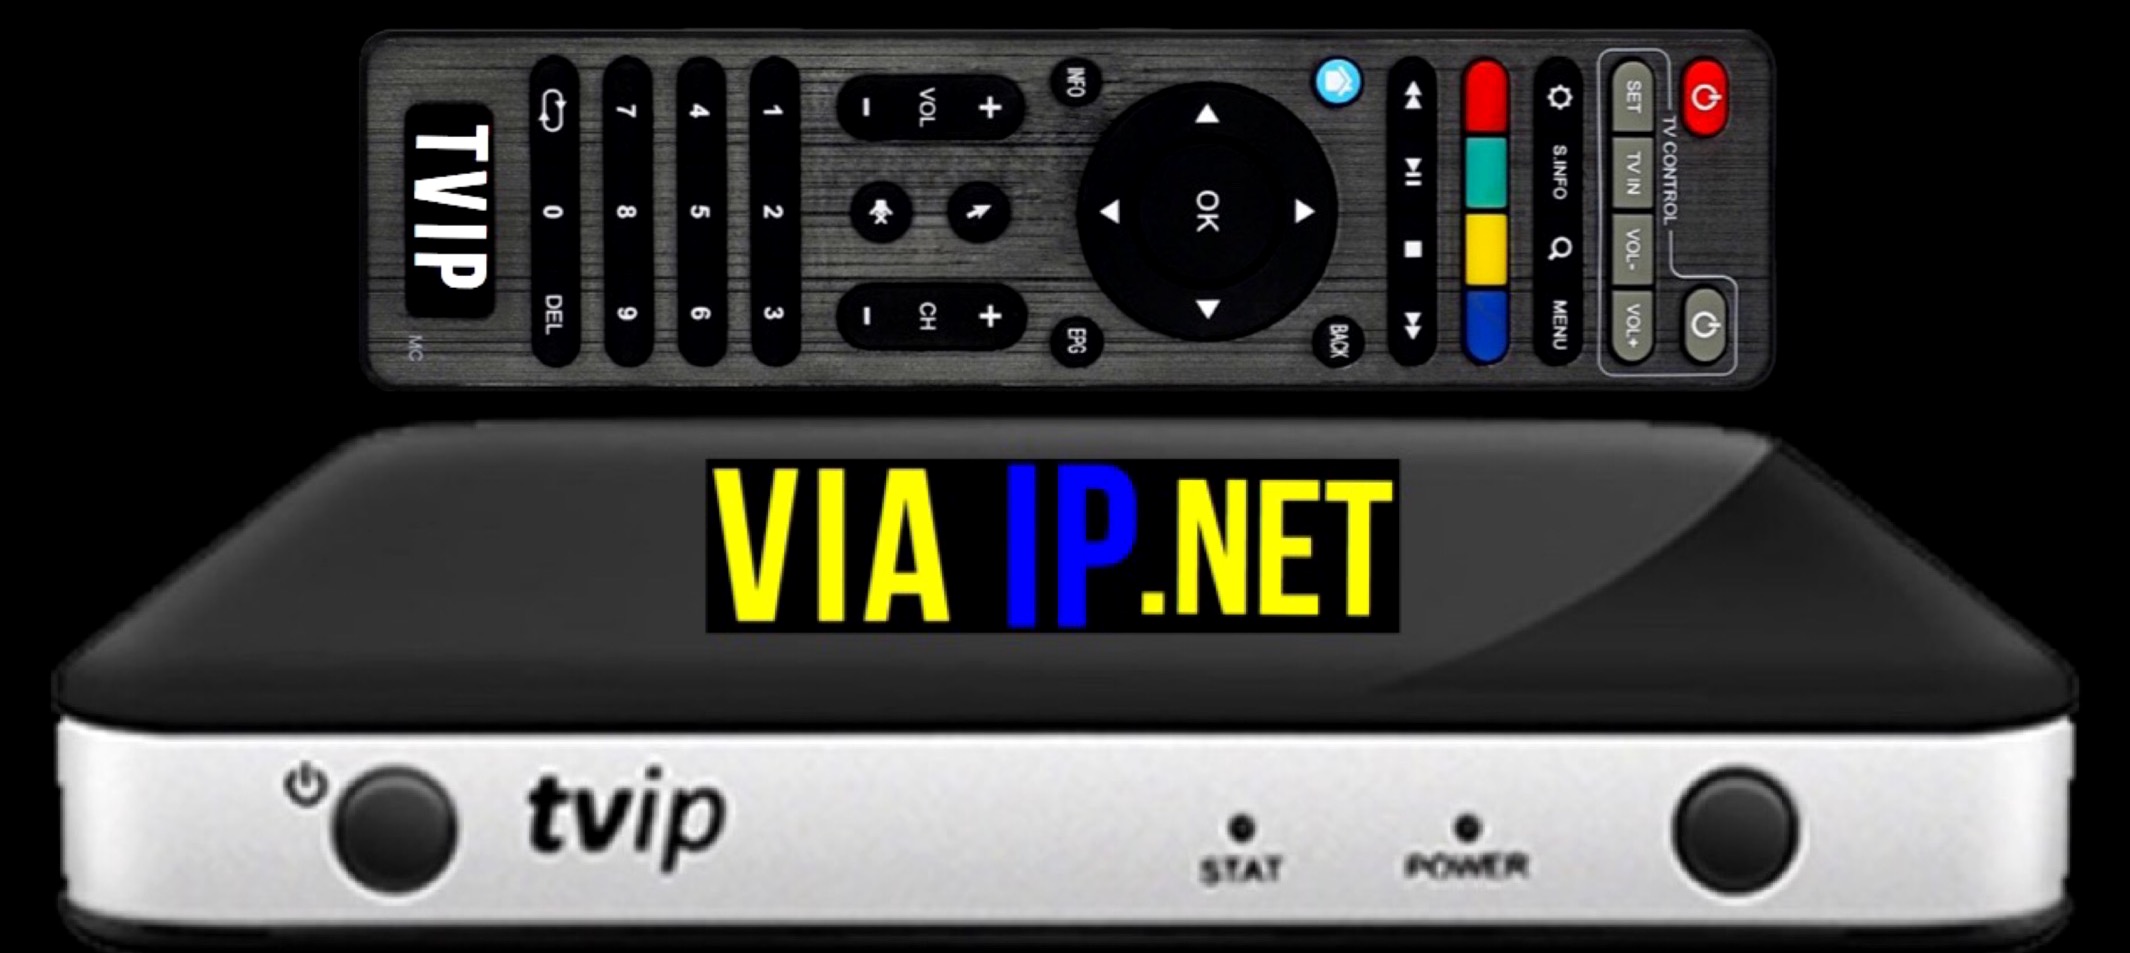 Iptv box - Tvip 605 - Nordic iptv Sverige - Viaip.net